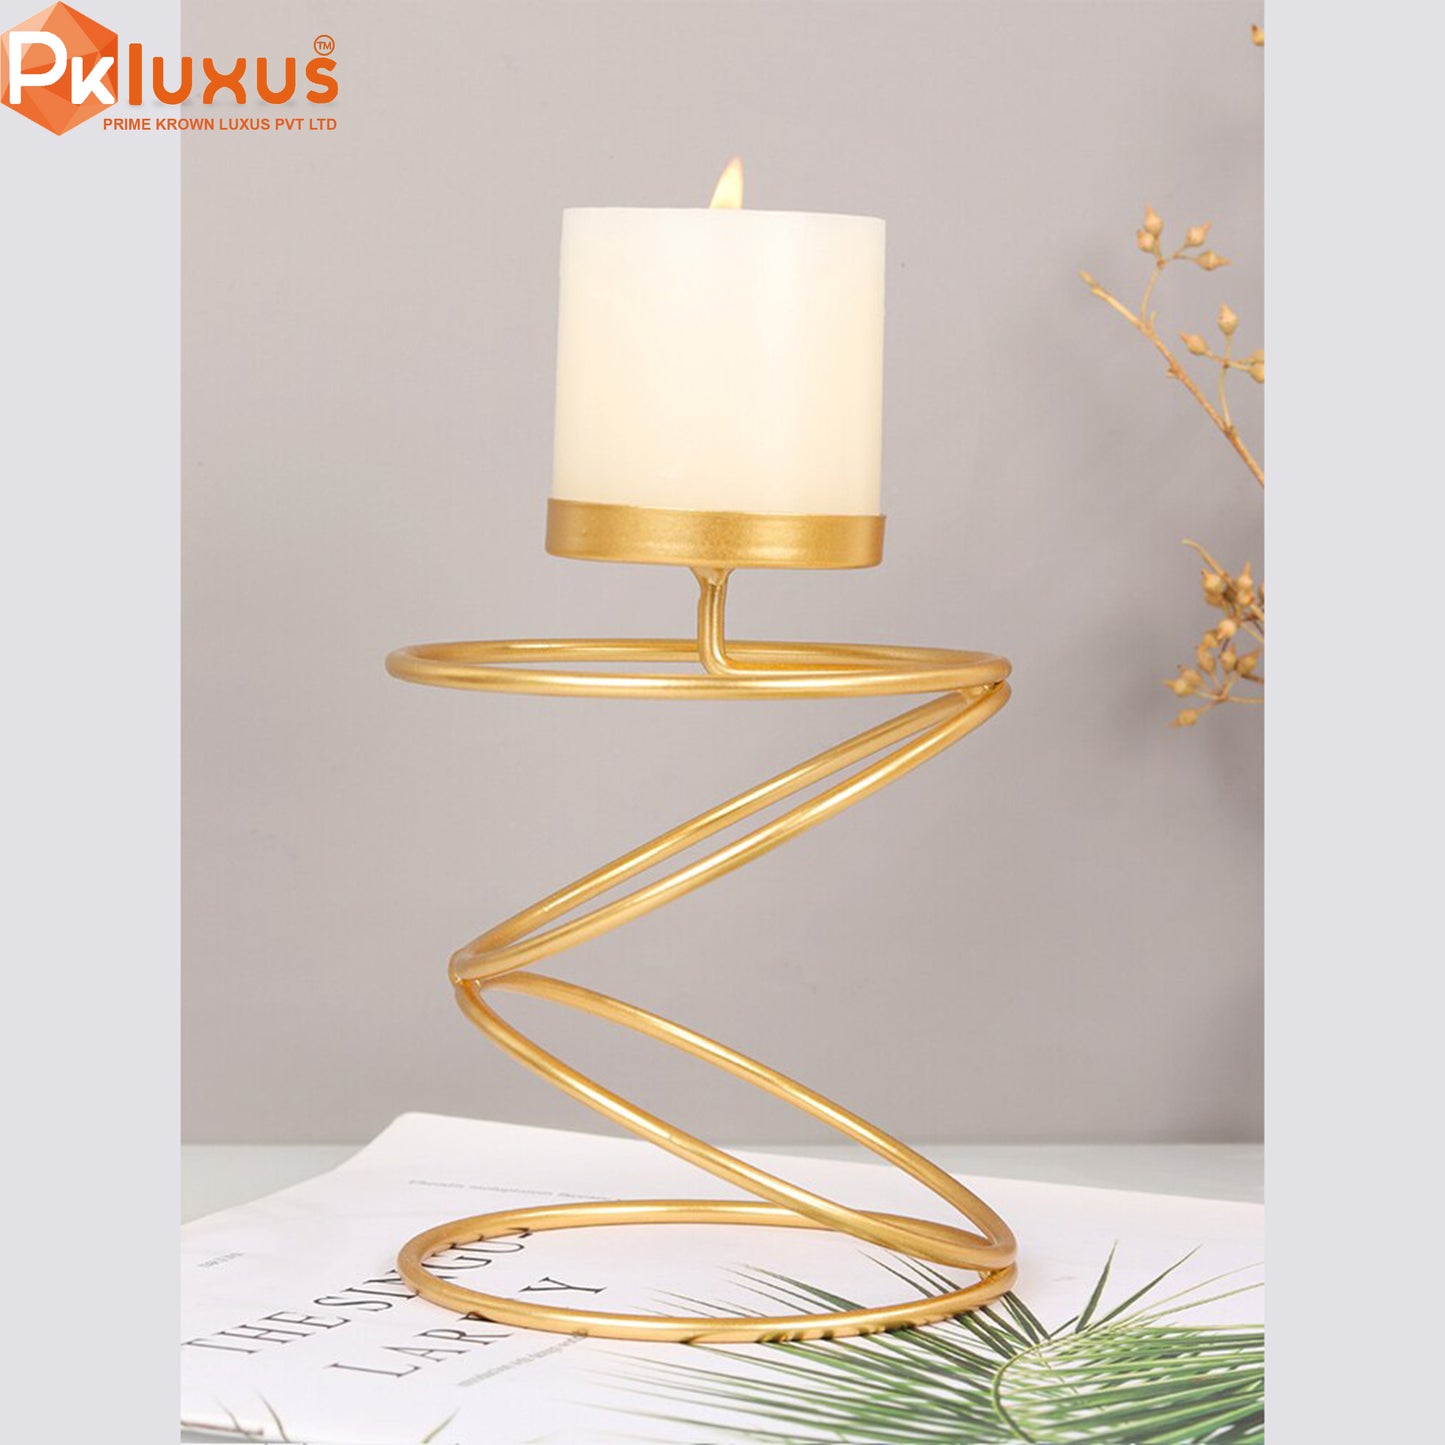 Luxury Style Metal Candle Holders | PK LUXUS™ - PK LUXUS